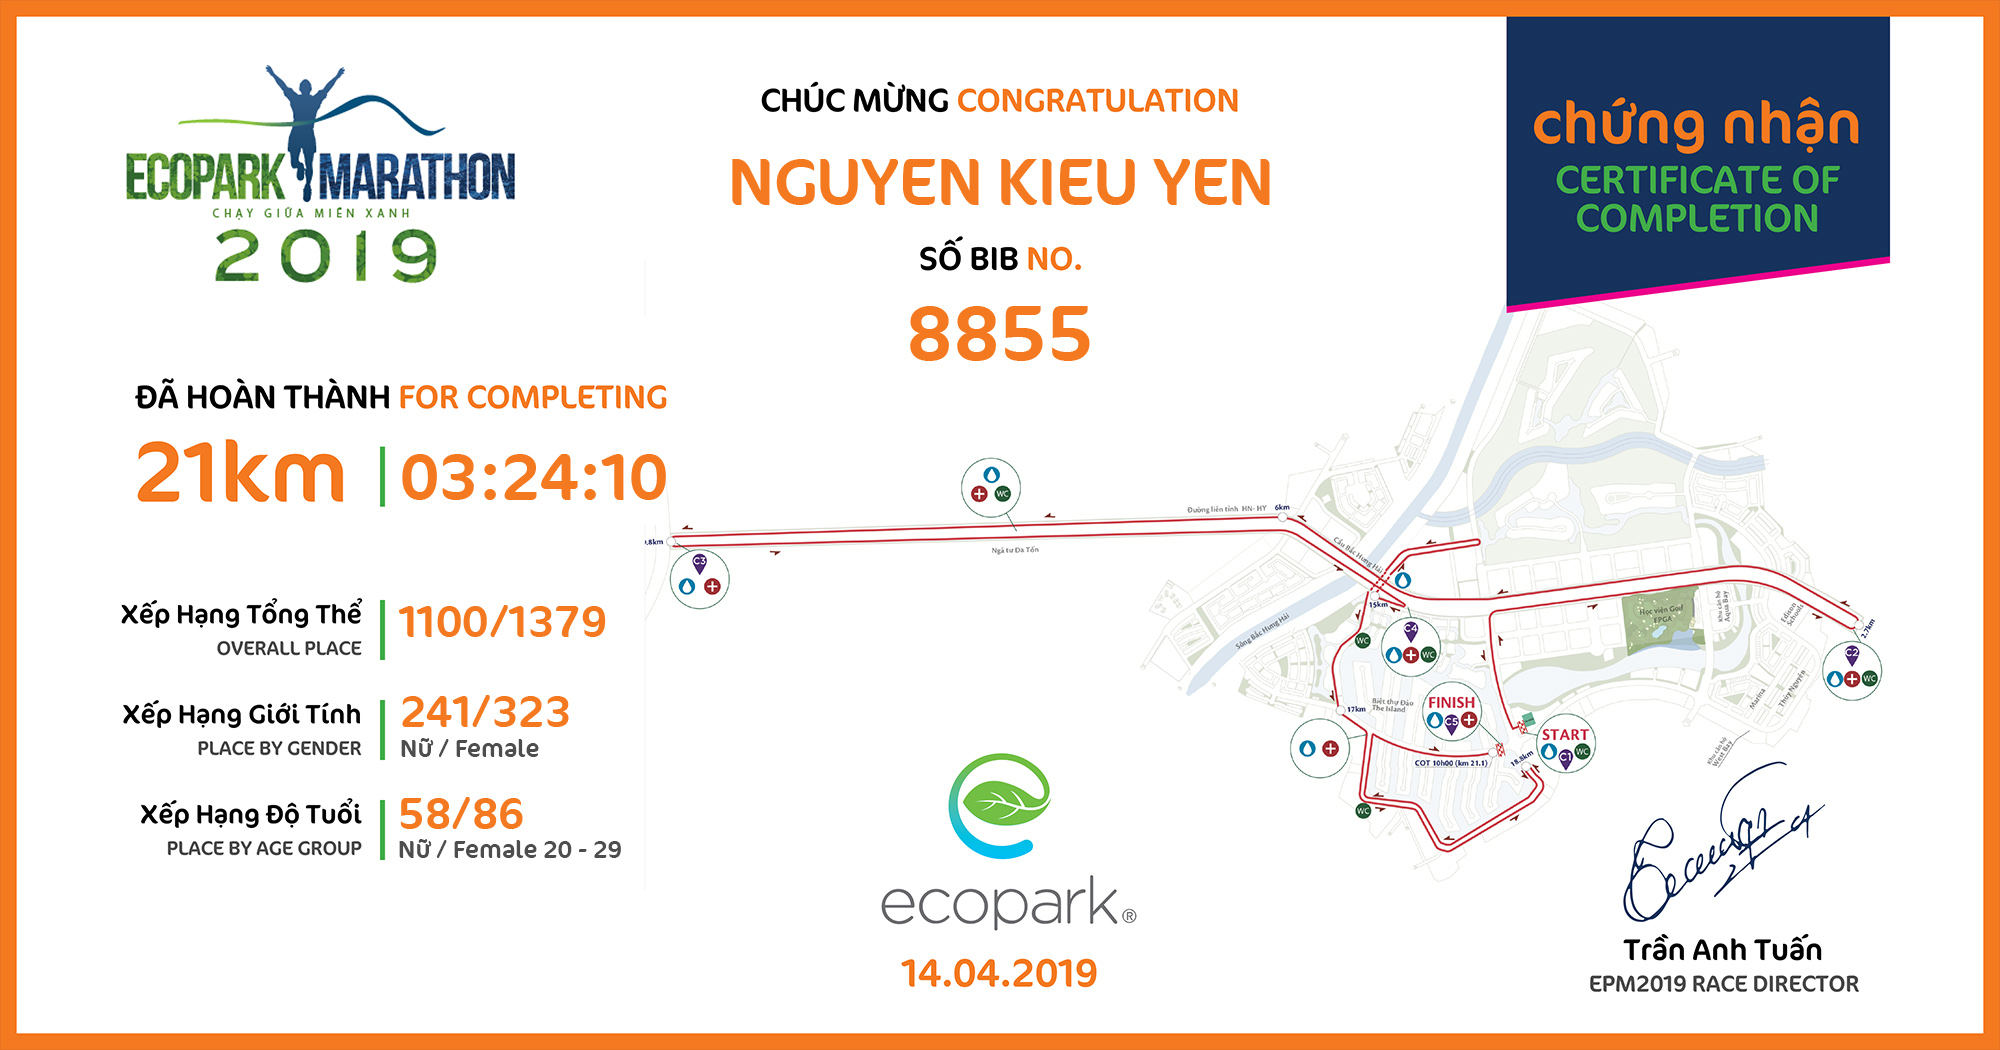 8855 - Nguyen Kieu Yen